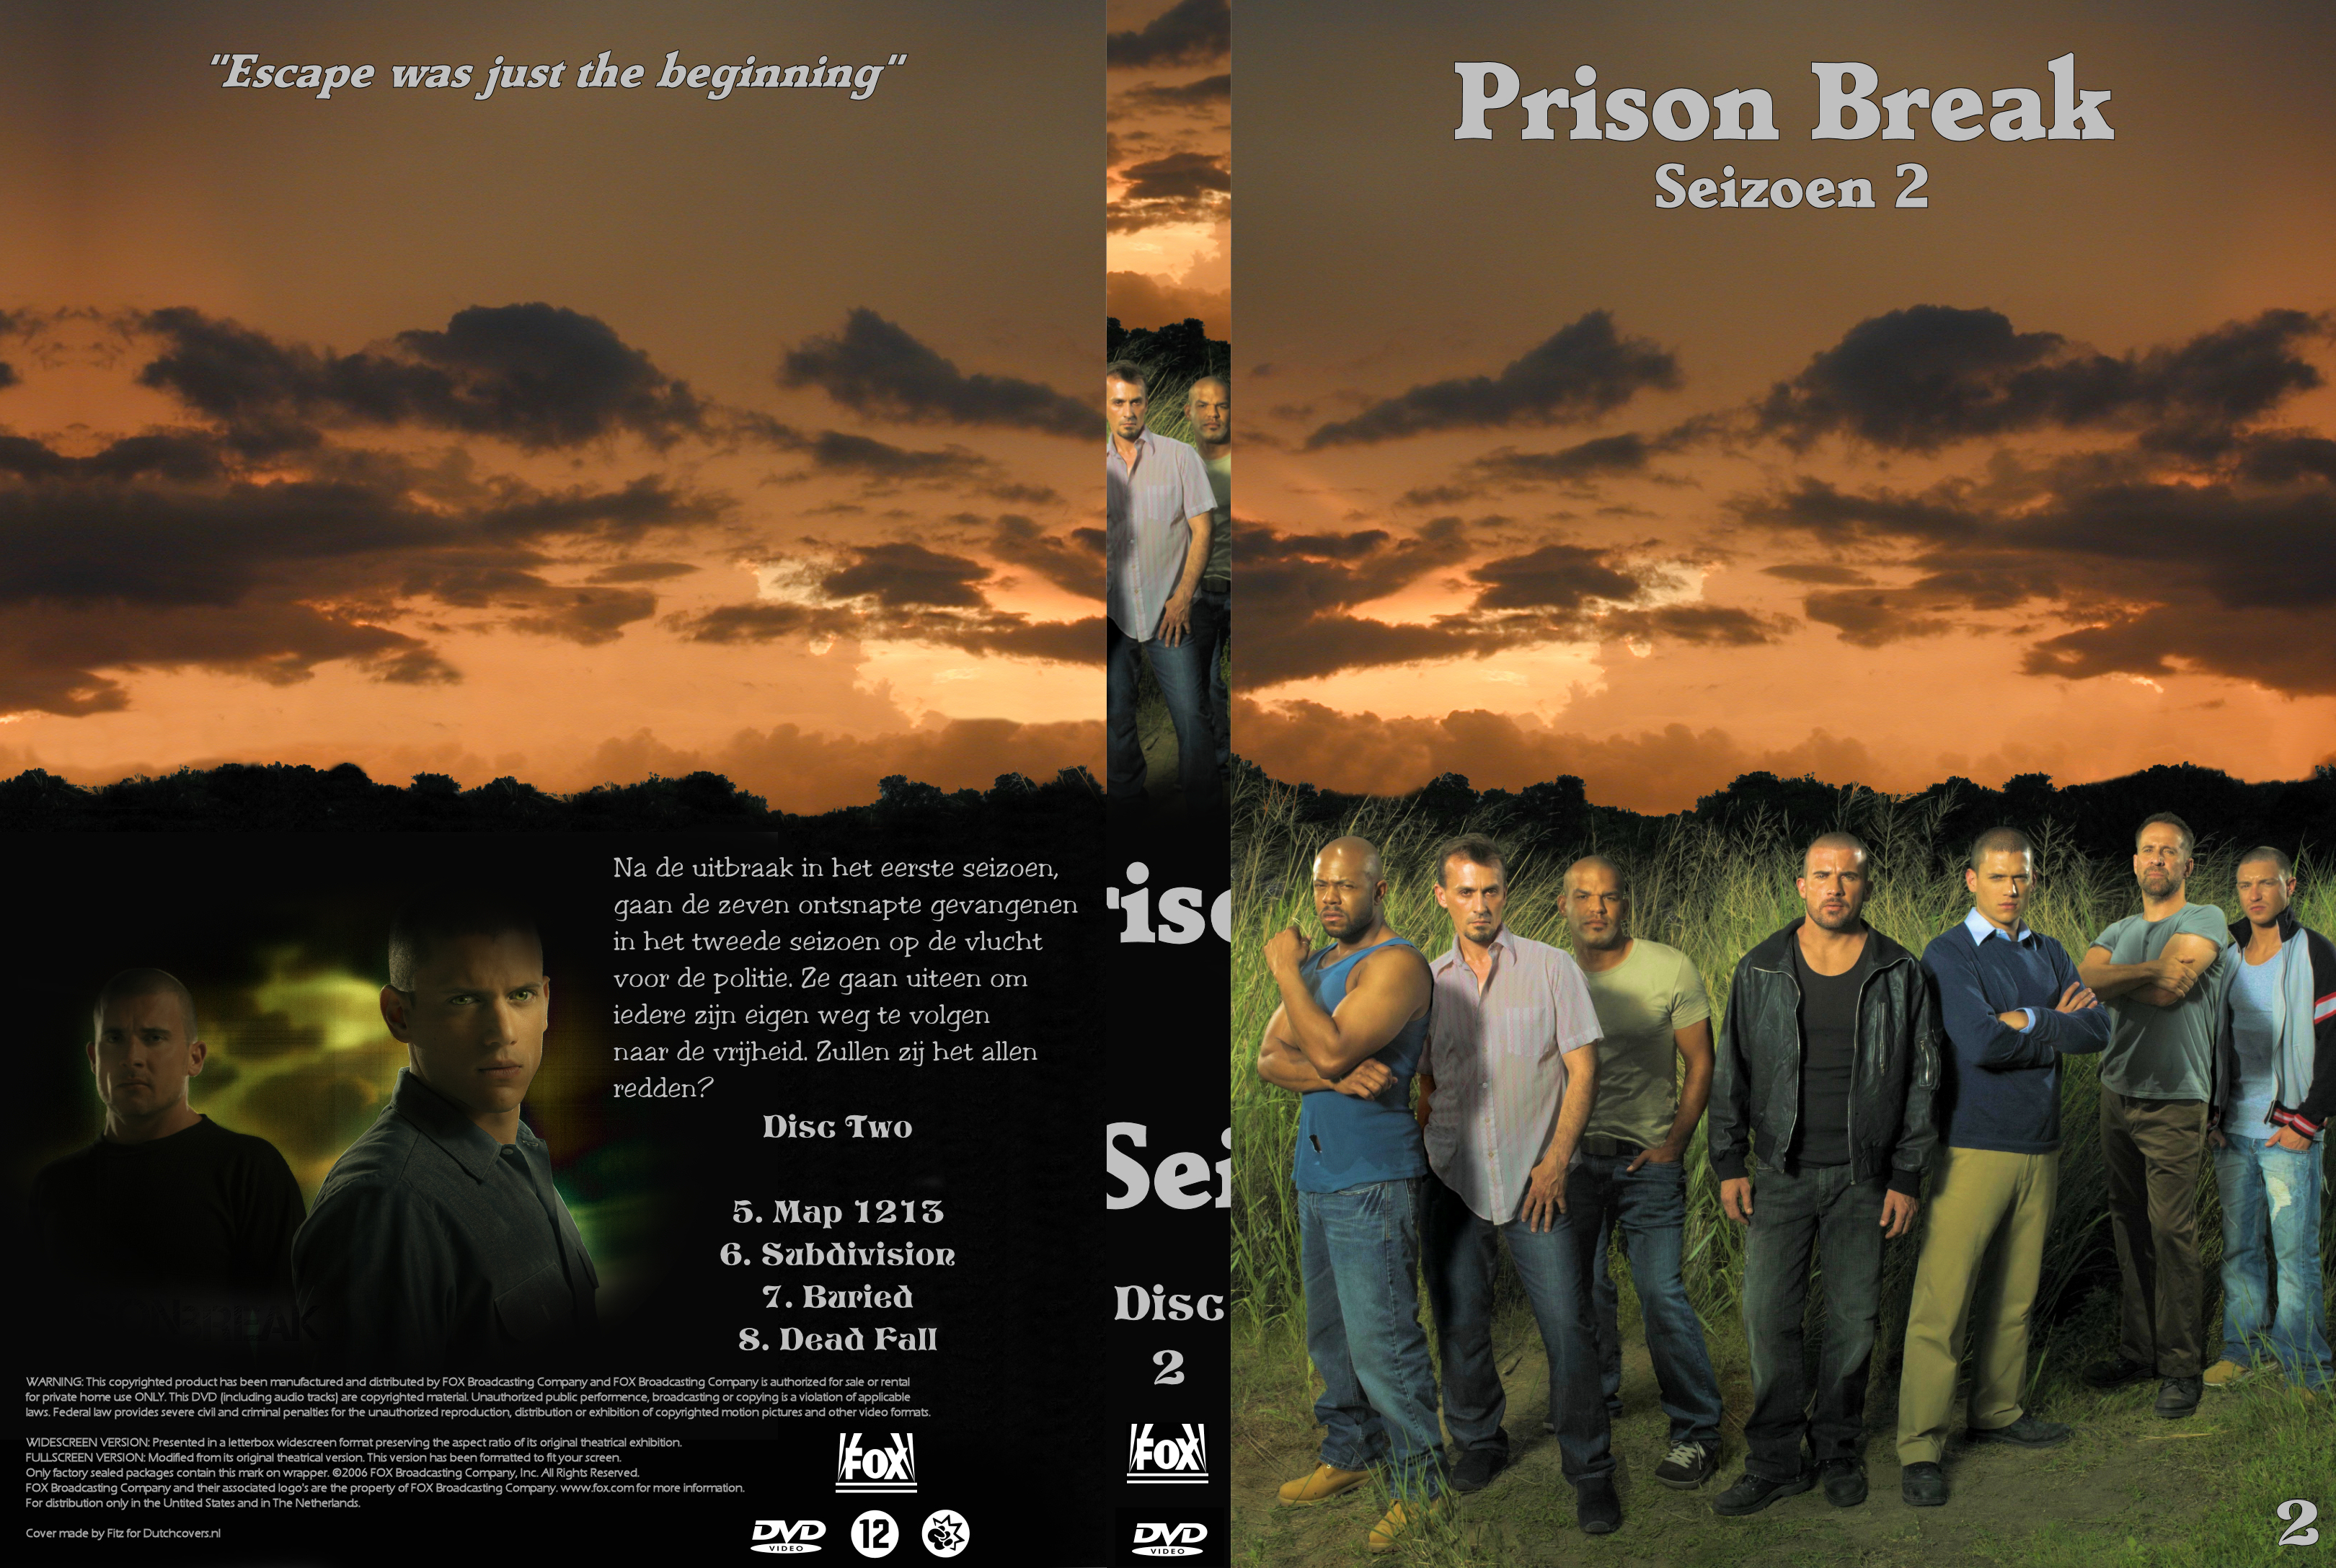 Prison Break Seizoen 2 dvd 2